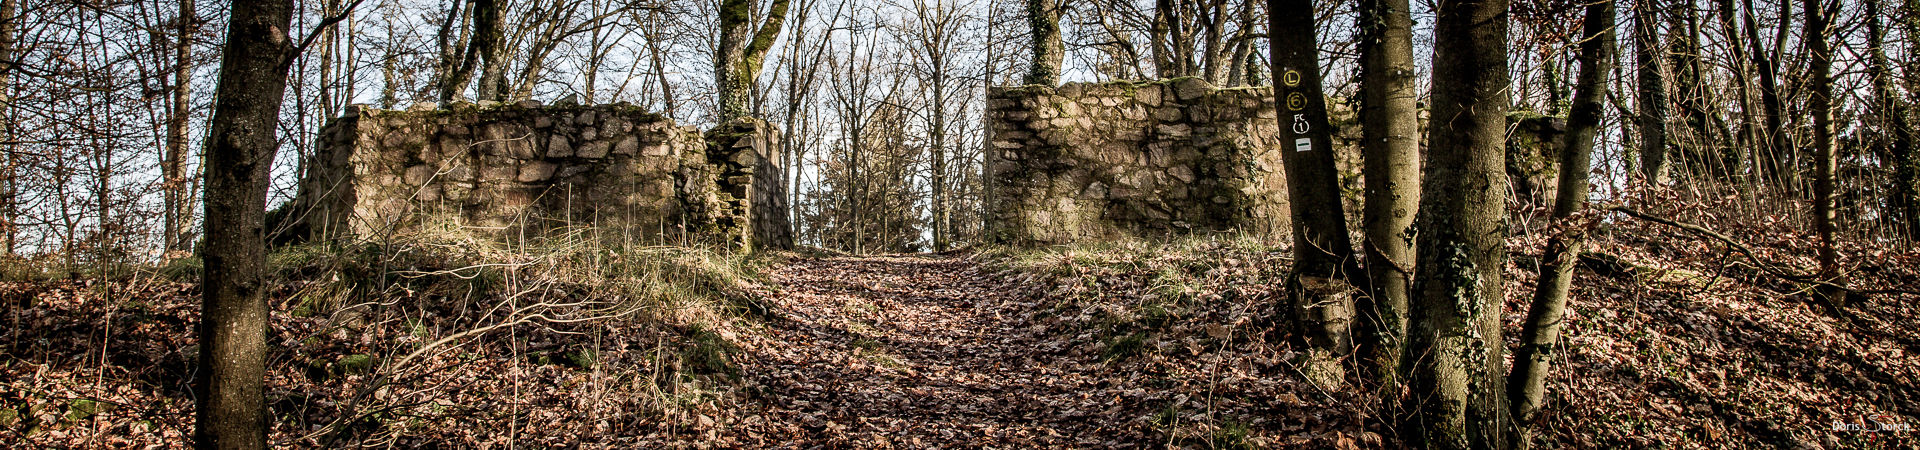 Ruinen der Burg Schnellerts im Odenwald